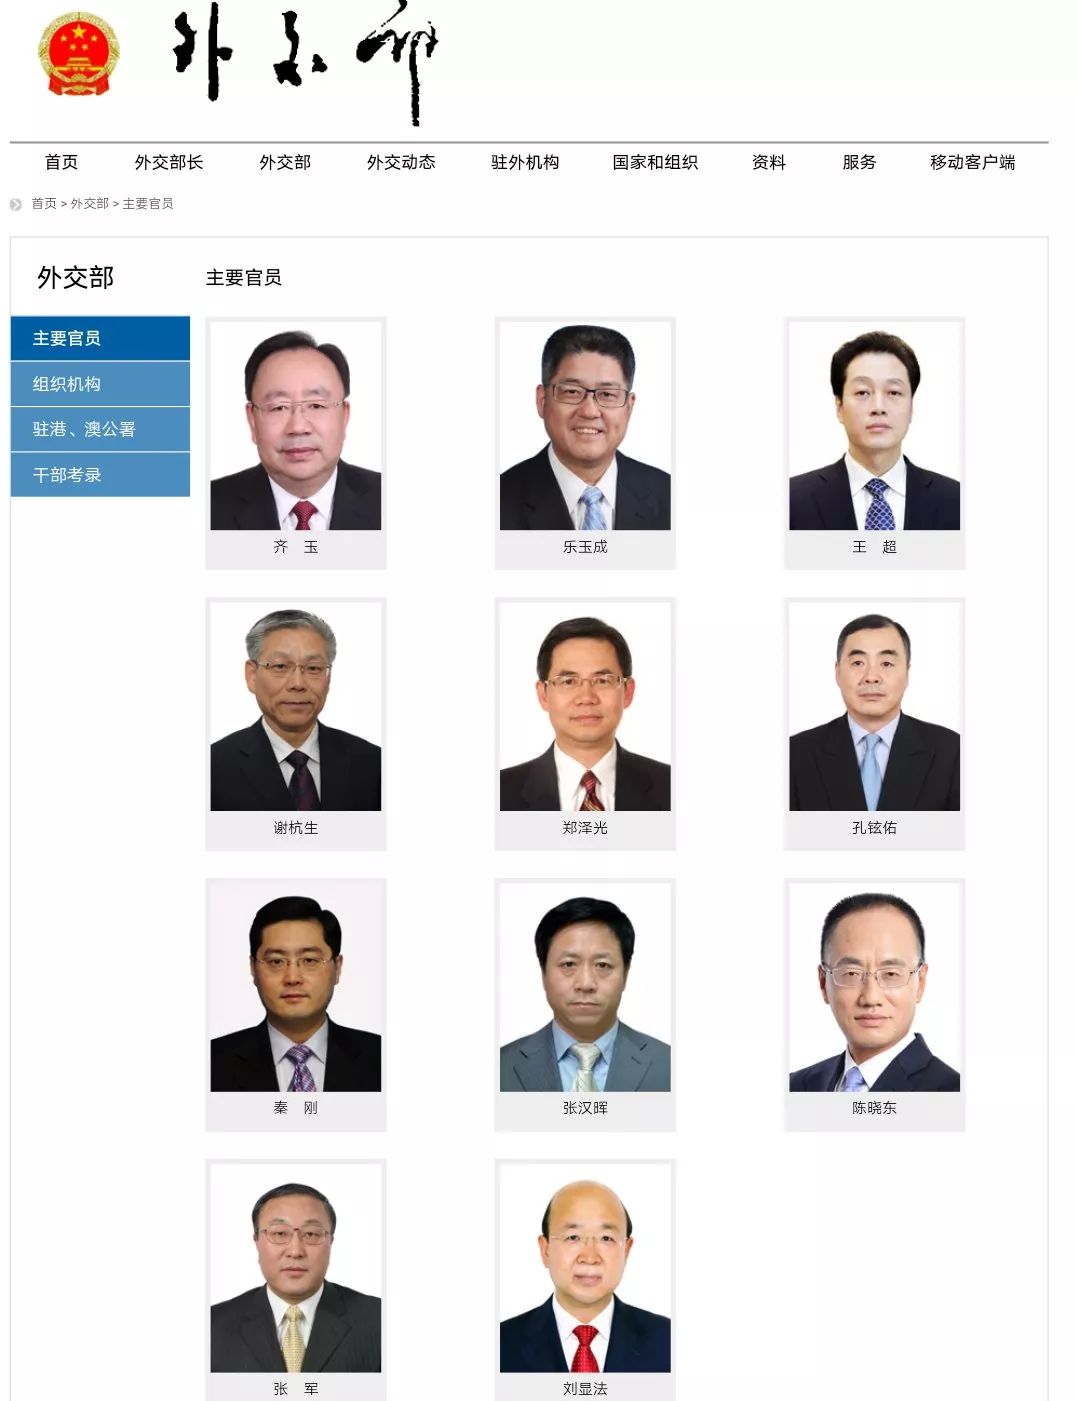 中国现任外交官 名单图片